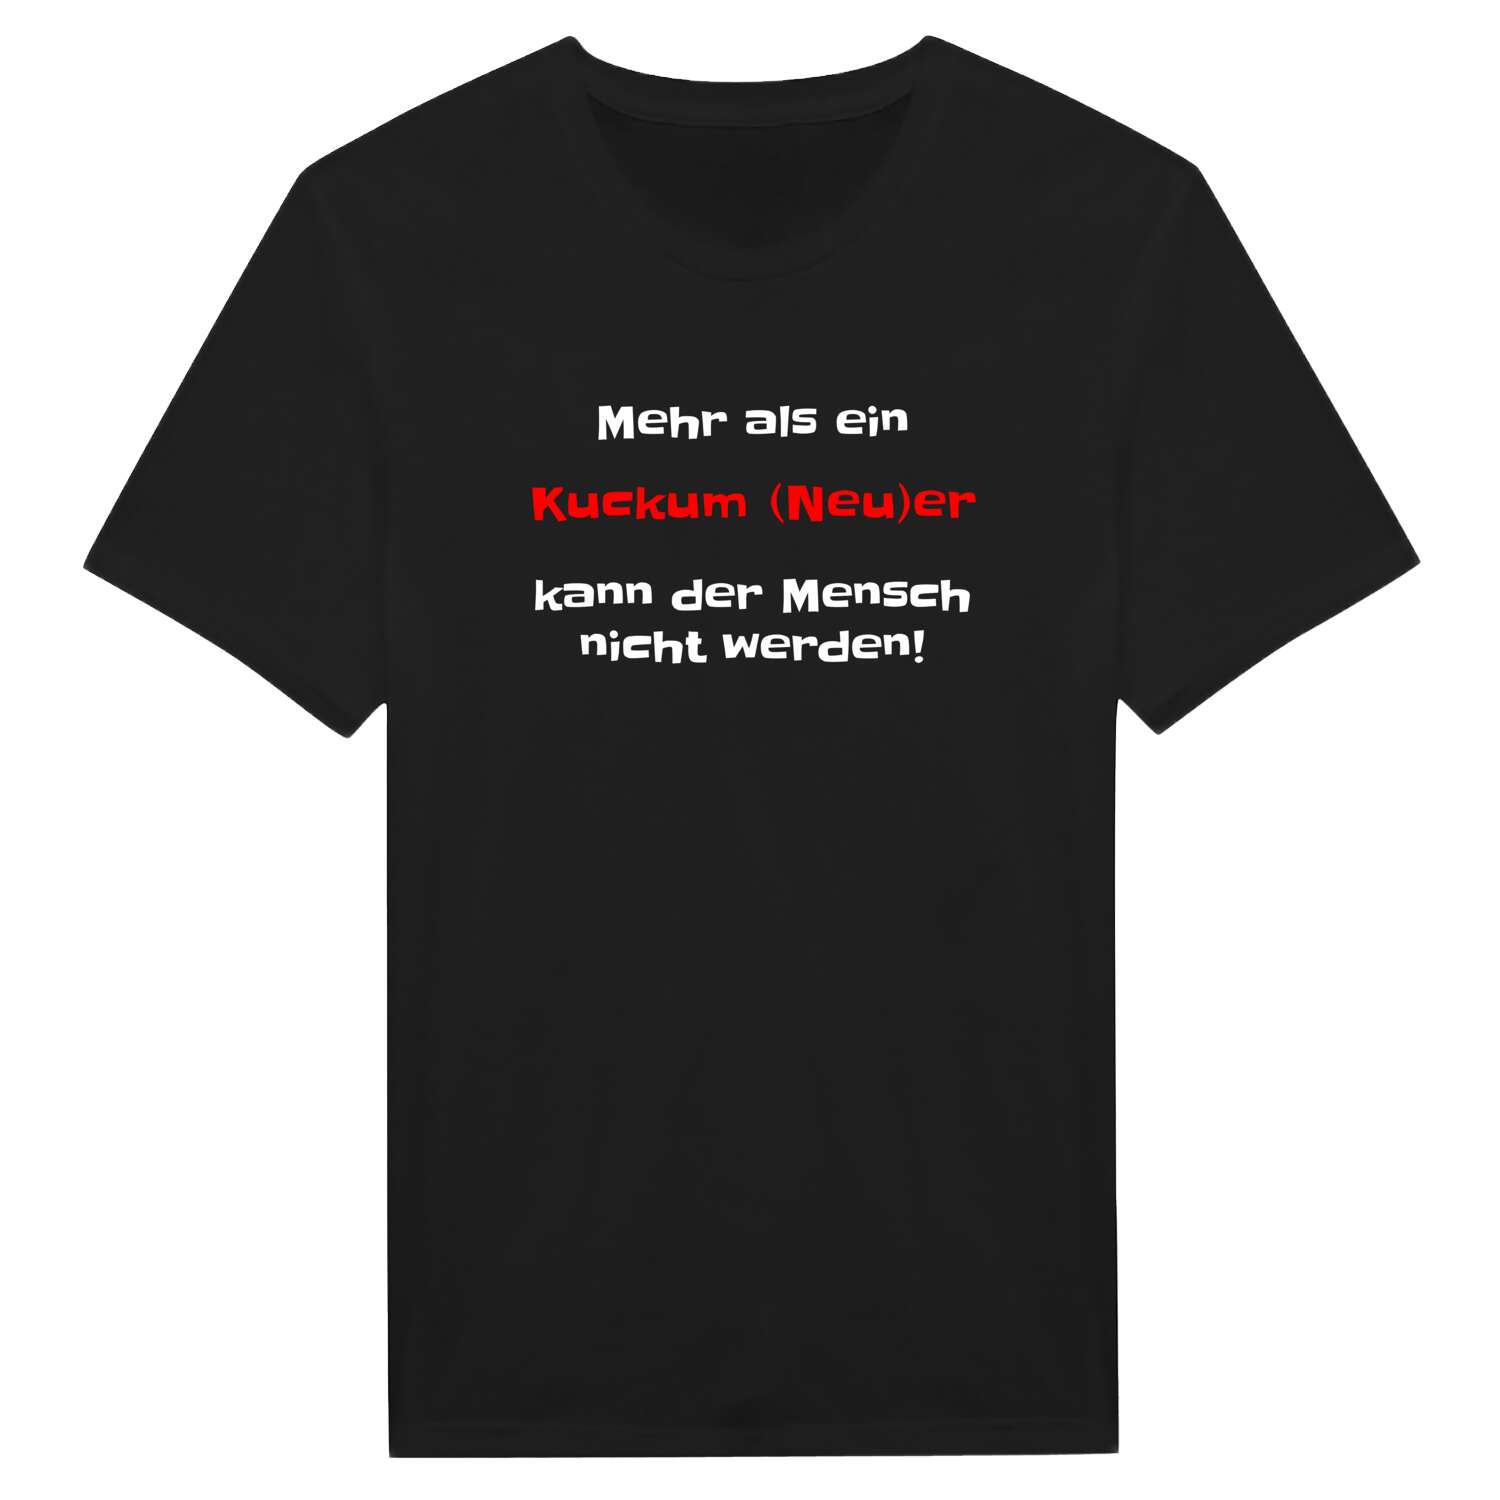 Kuckum (Neu) T-Shirt »Mehr als ein«